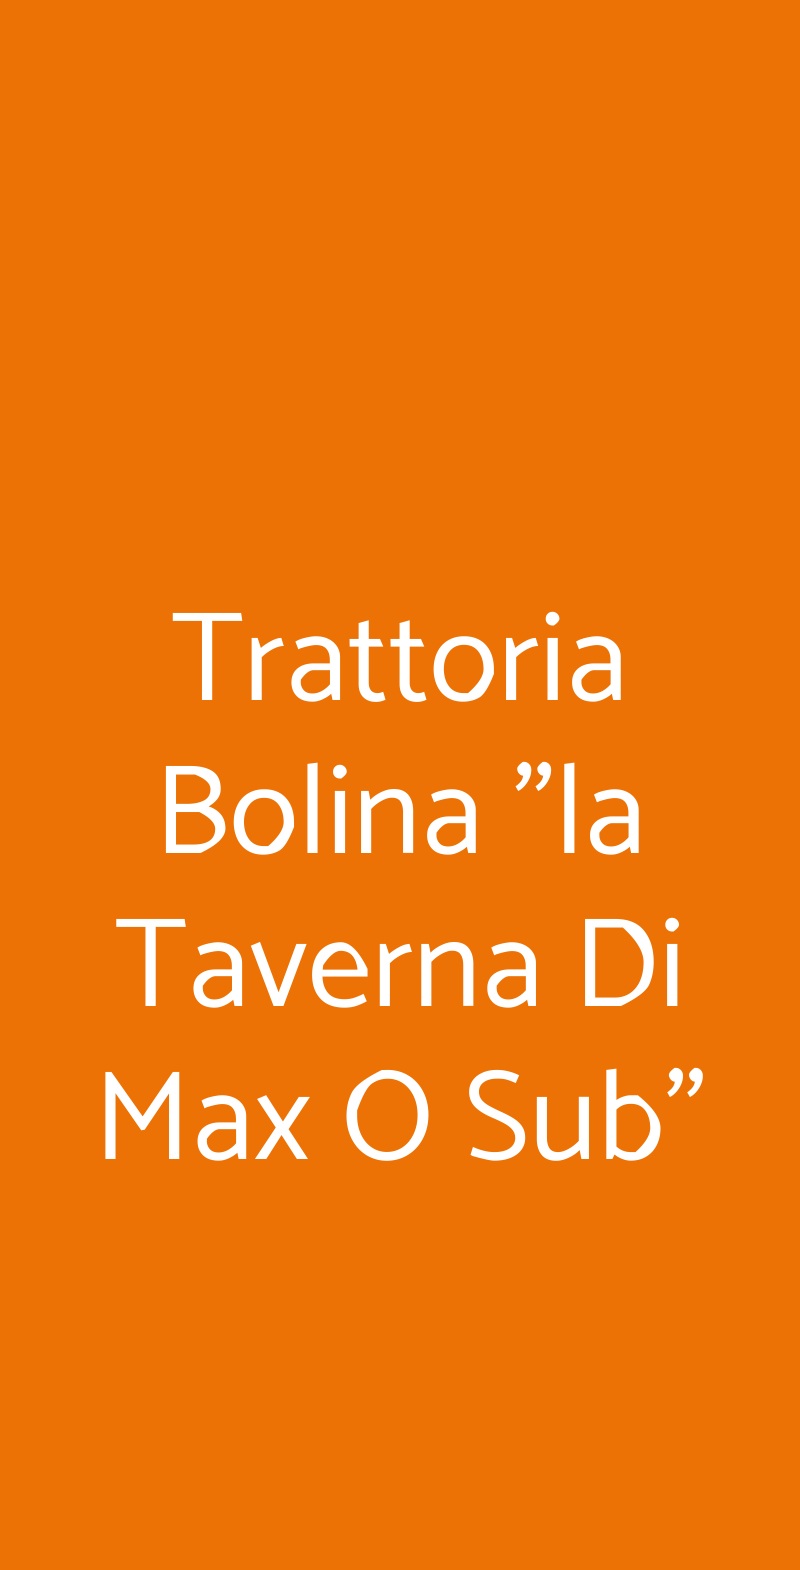 Trattoria Bolina "la Taverna Di Max O Sub" Castel Volturno menù 1 pagina